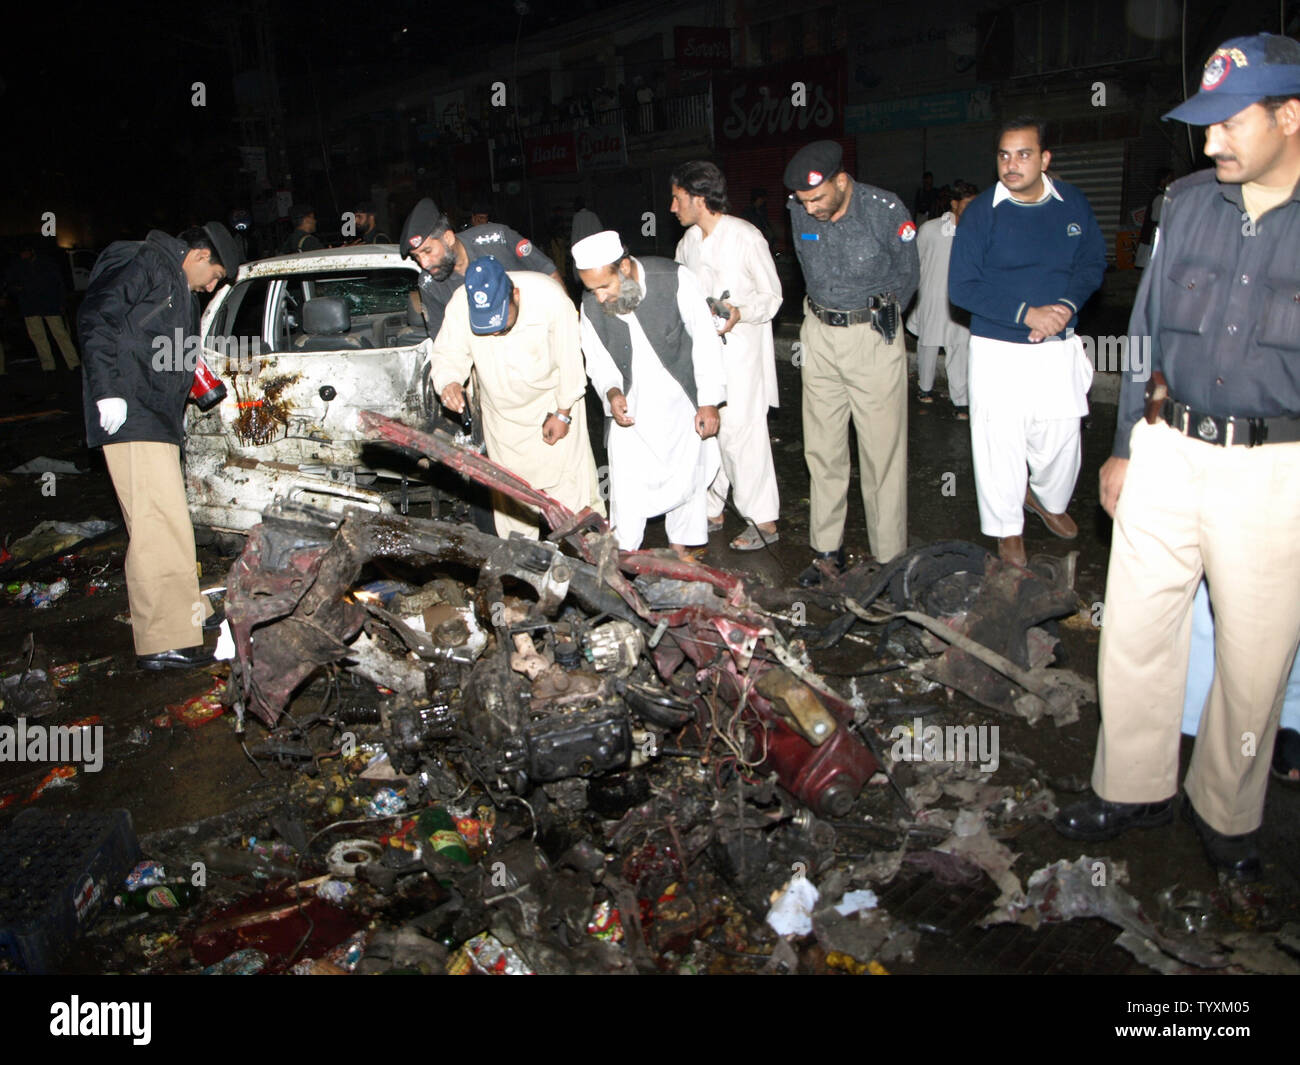 Die pakistanischen Polizisten inspizieren ein Fahrzeug von einem Auto Bombenanschlag in Charsadda, Pakistan am 10. November 2009 zerstört. Die Autobombe explodierte vor einem überfüllten Markt im Nordwesten Pakistans tötet 24 Menschen in dem jüngsten Angriff. UPI/Sajjad Ali Qureshi. Stockfoto